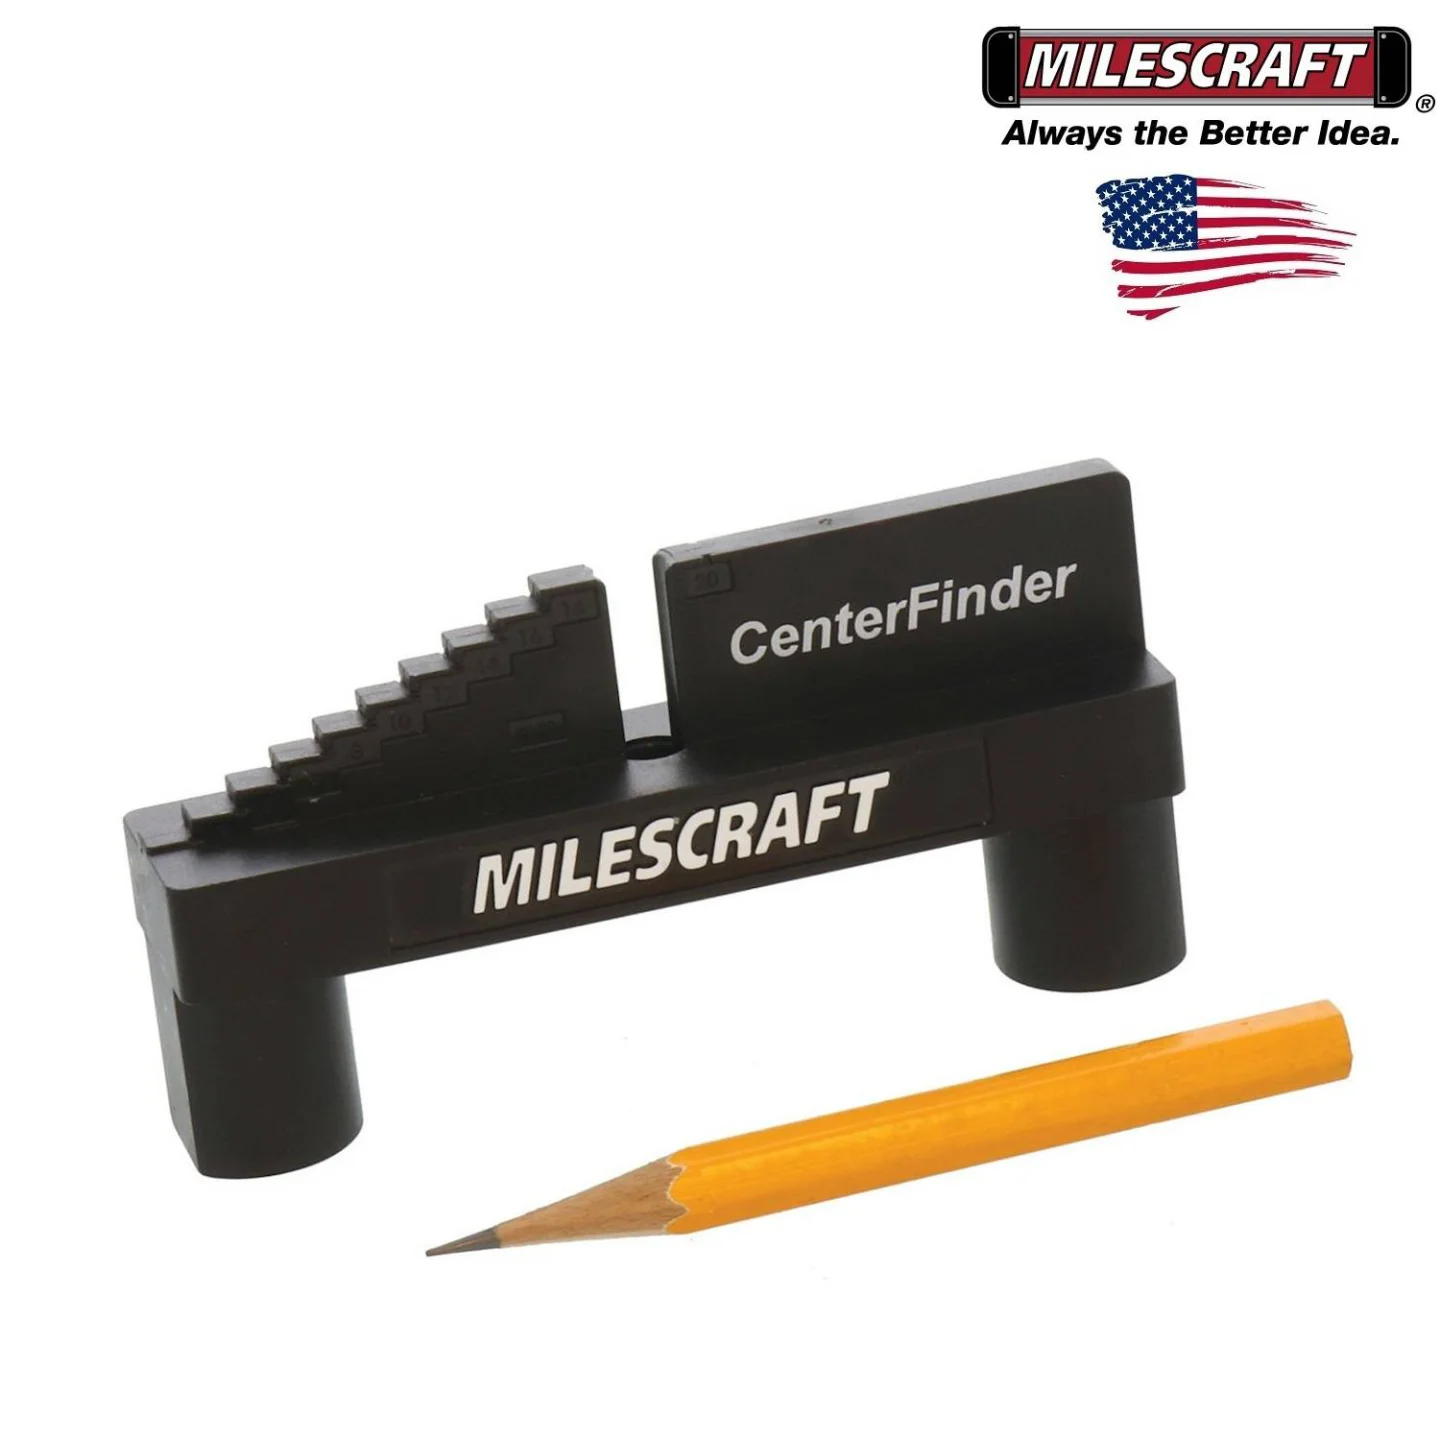 CenterFinder-Milescraft-8458.